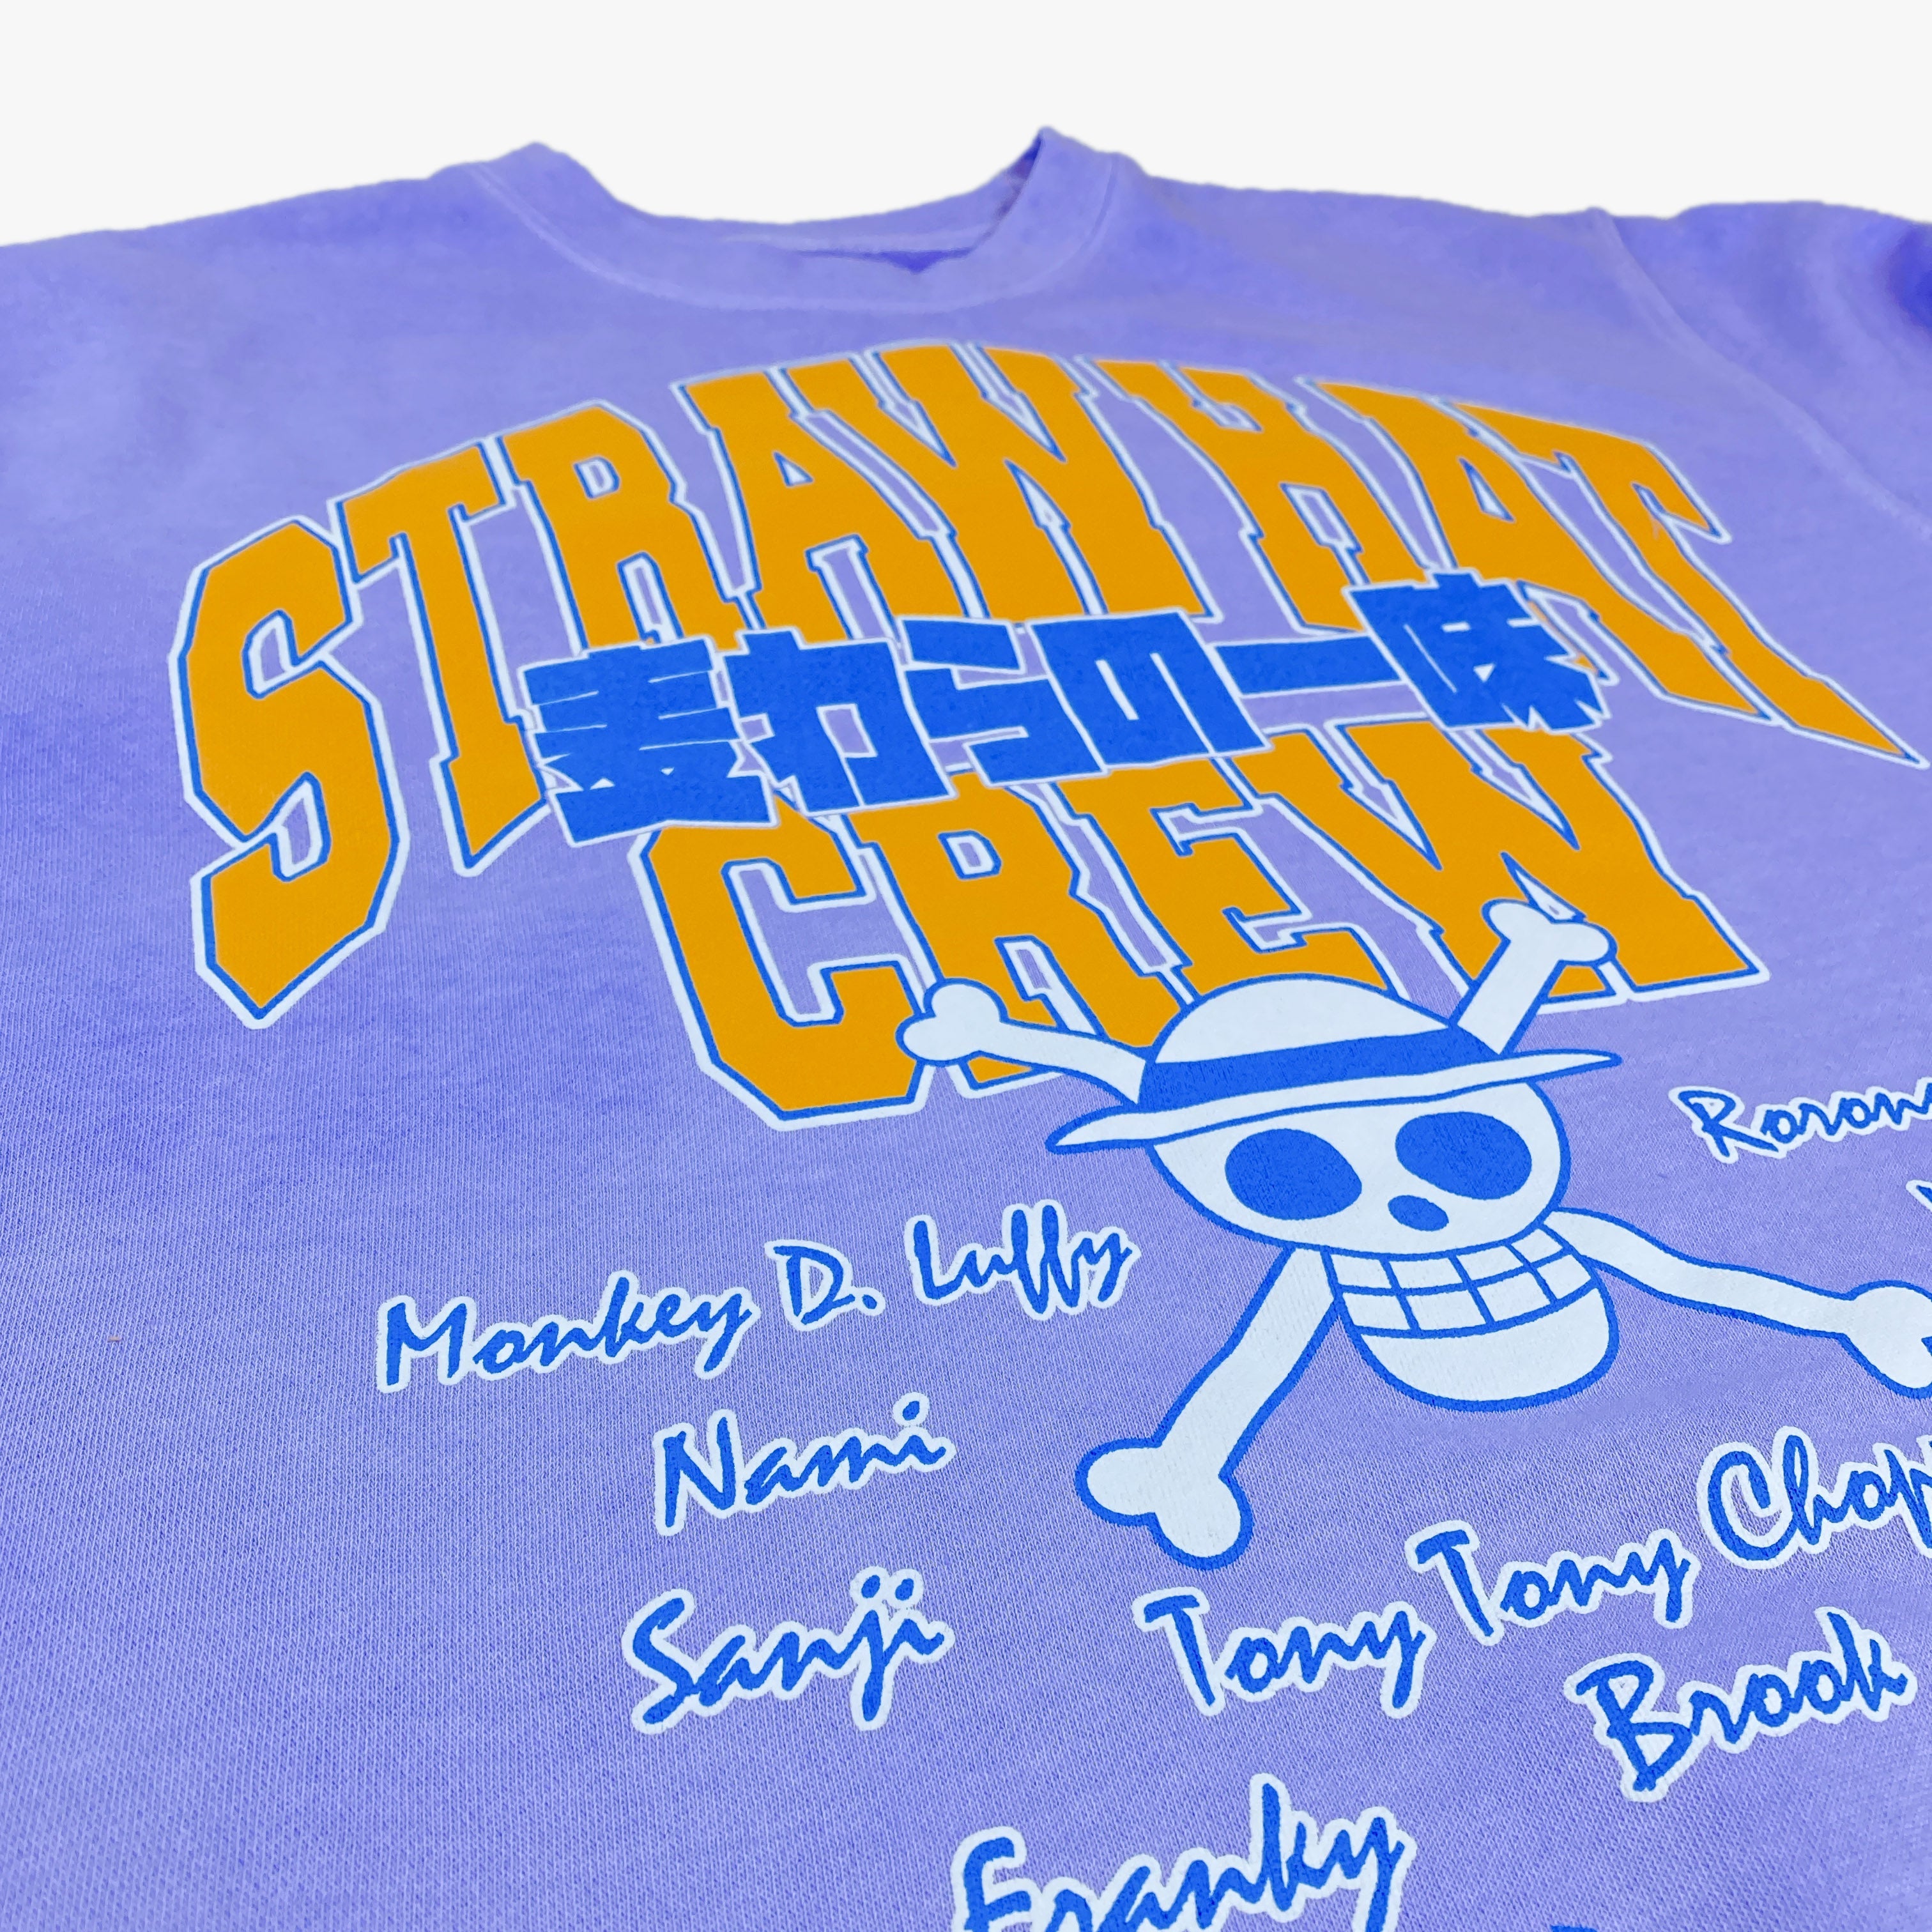 One Piece - Staw Hat Crew Names Purple Crew Sweatshirt - Crunchyroll Exclusive! image count 1